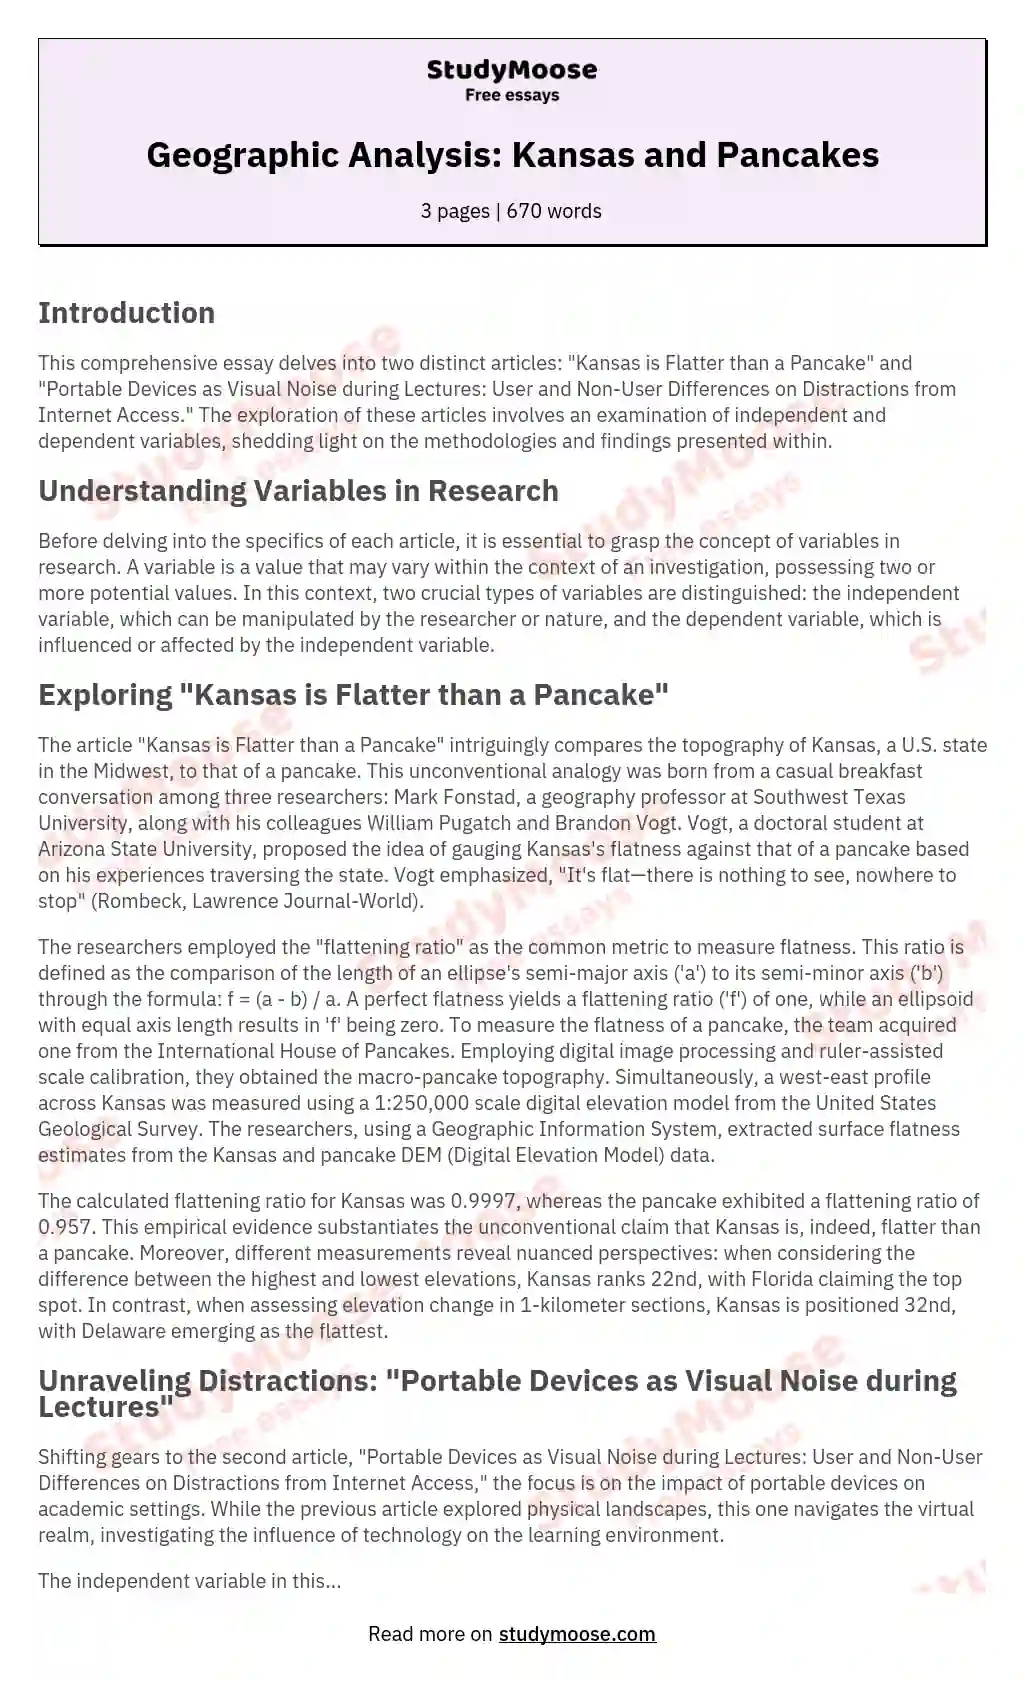 Geographic Analysis: Kansas and Pancakes essay